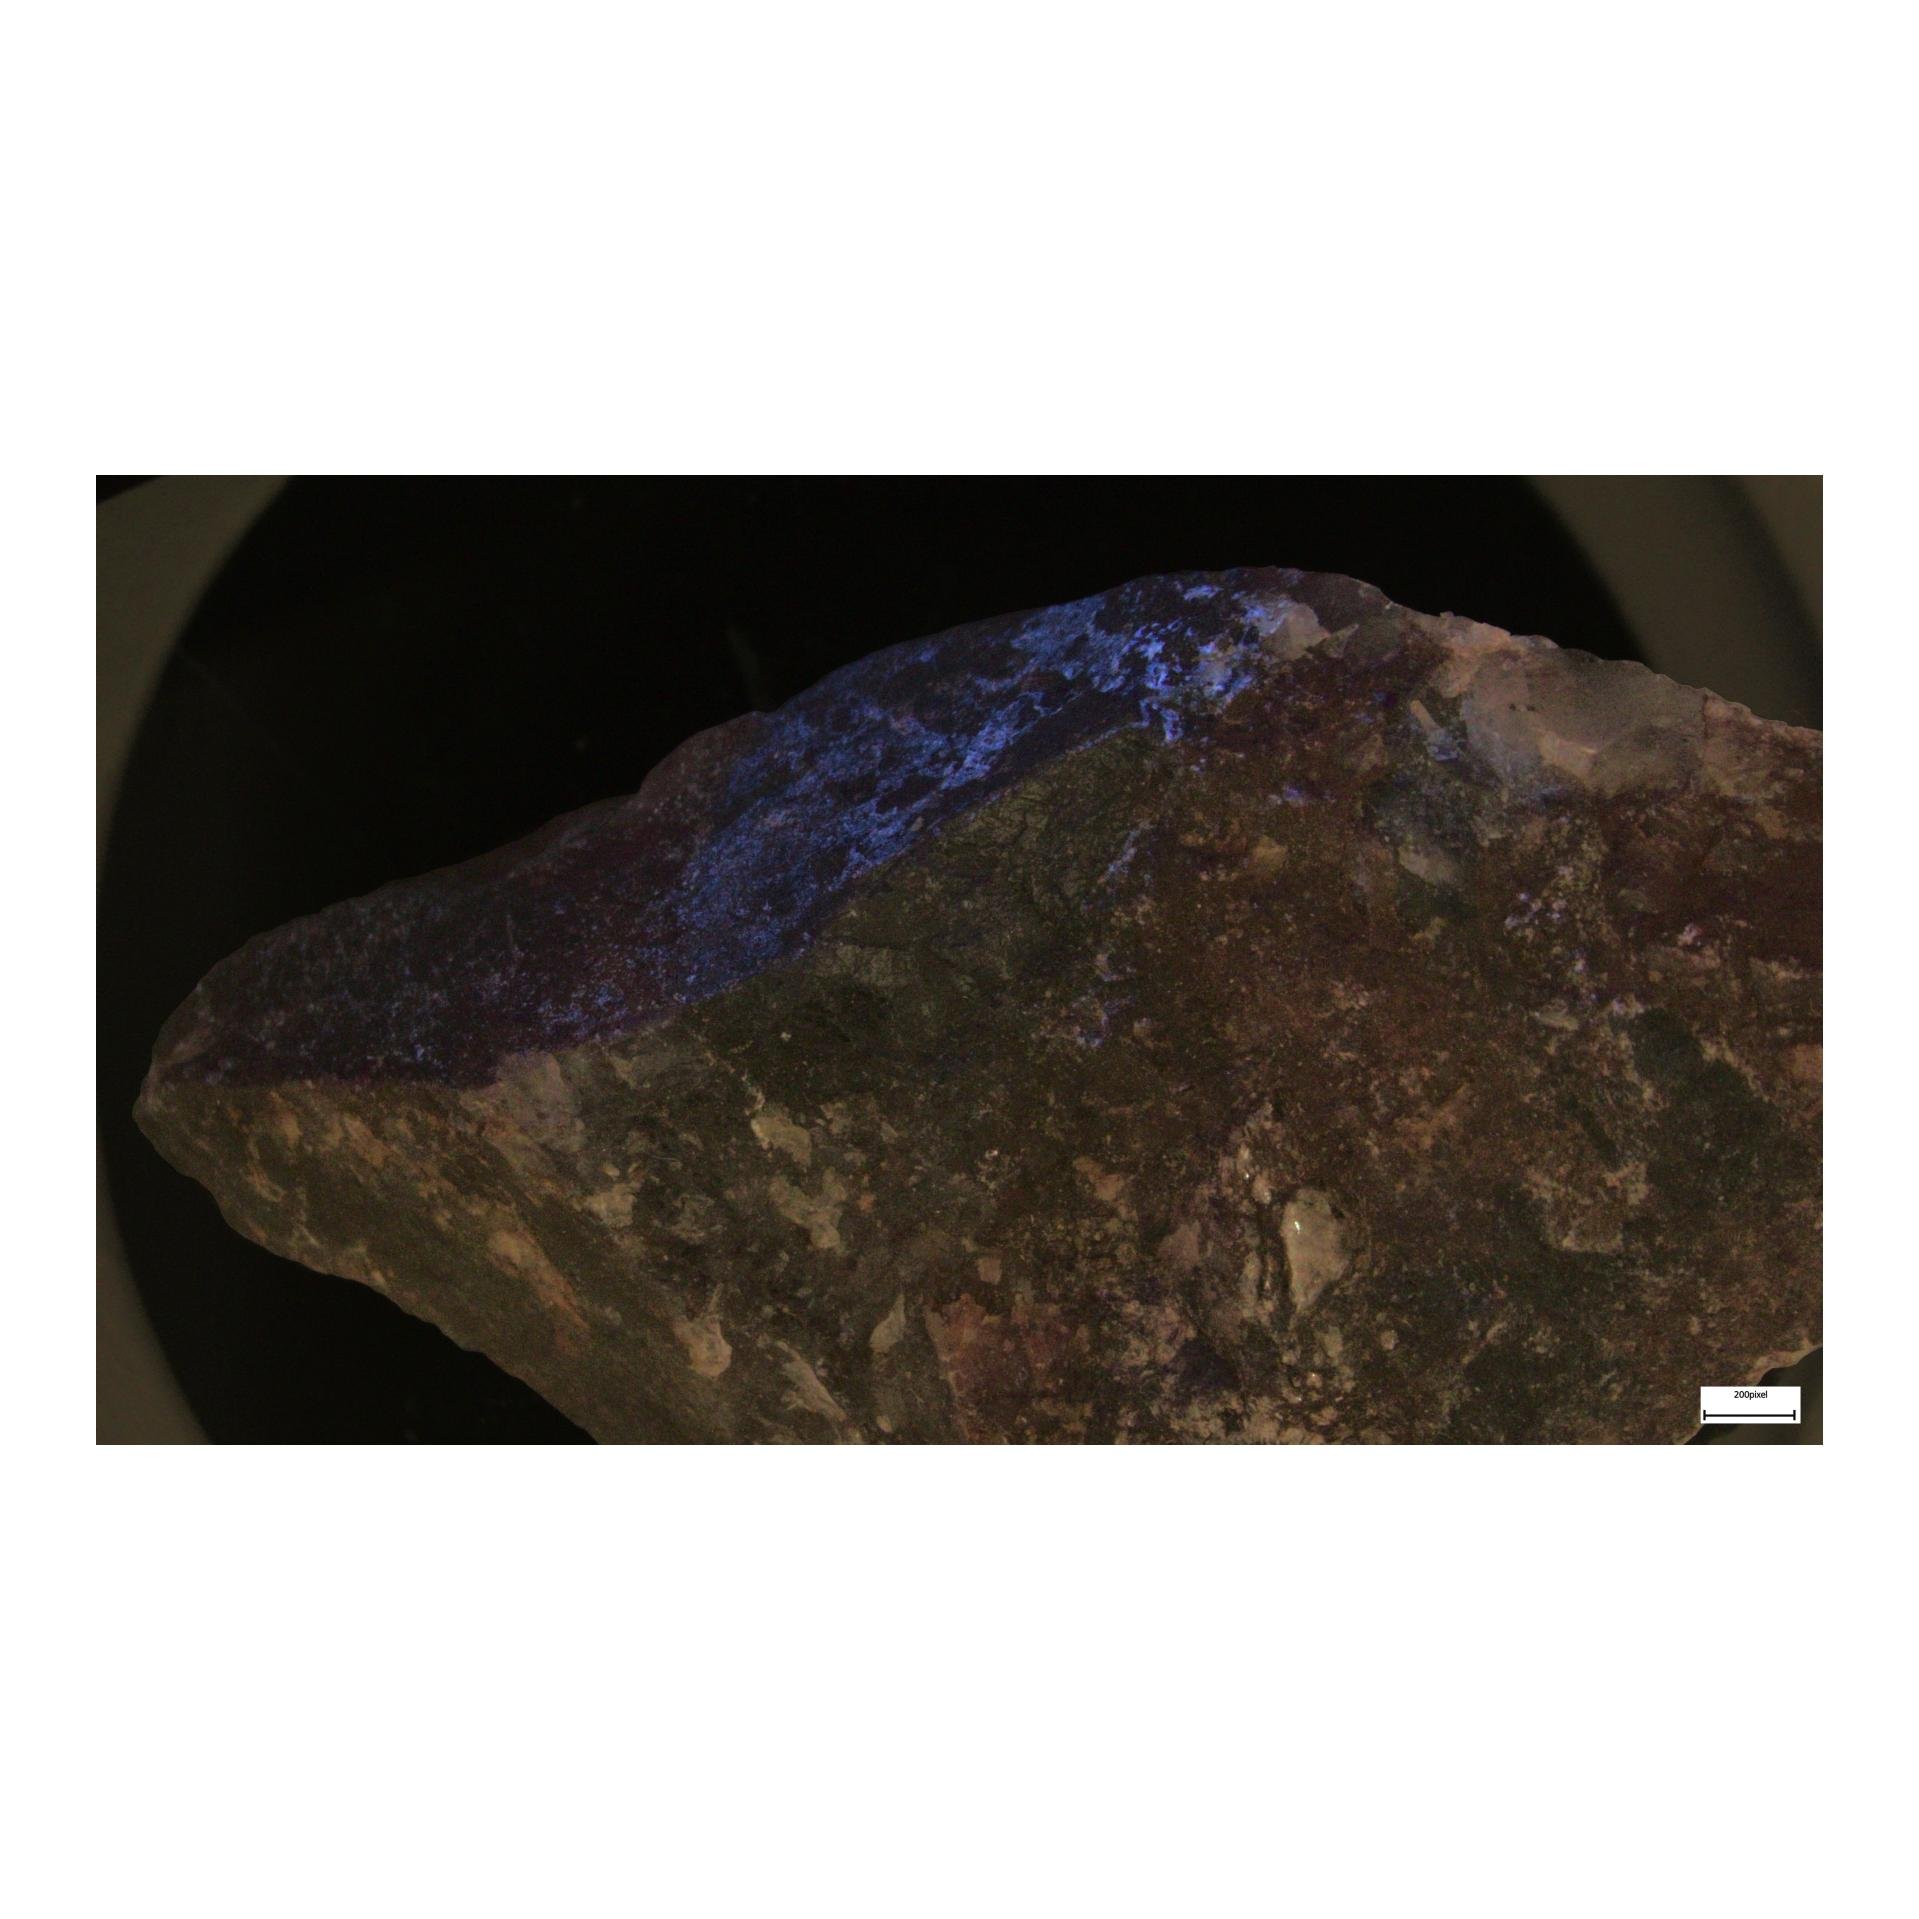 Mineralstuff Scheelit Molybdoscheelit på Wolframit Fluorescerande